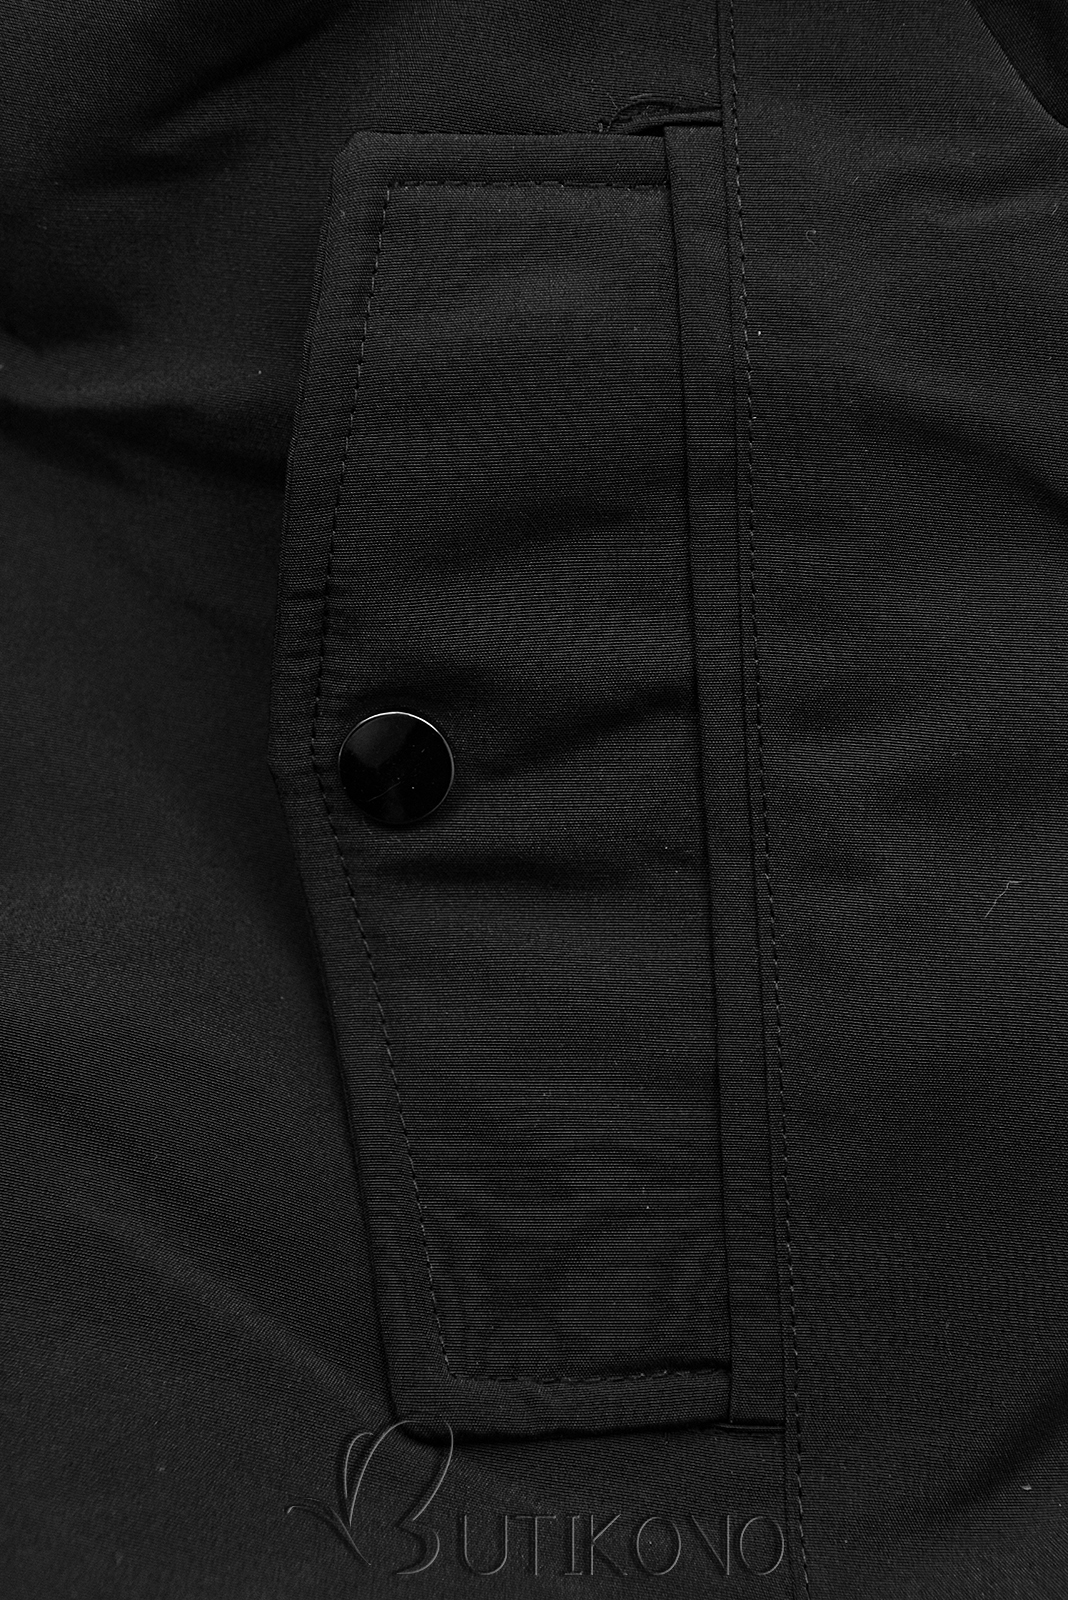 Oboustranná zimní bunda s kožešinou černá/karamel